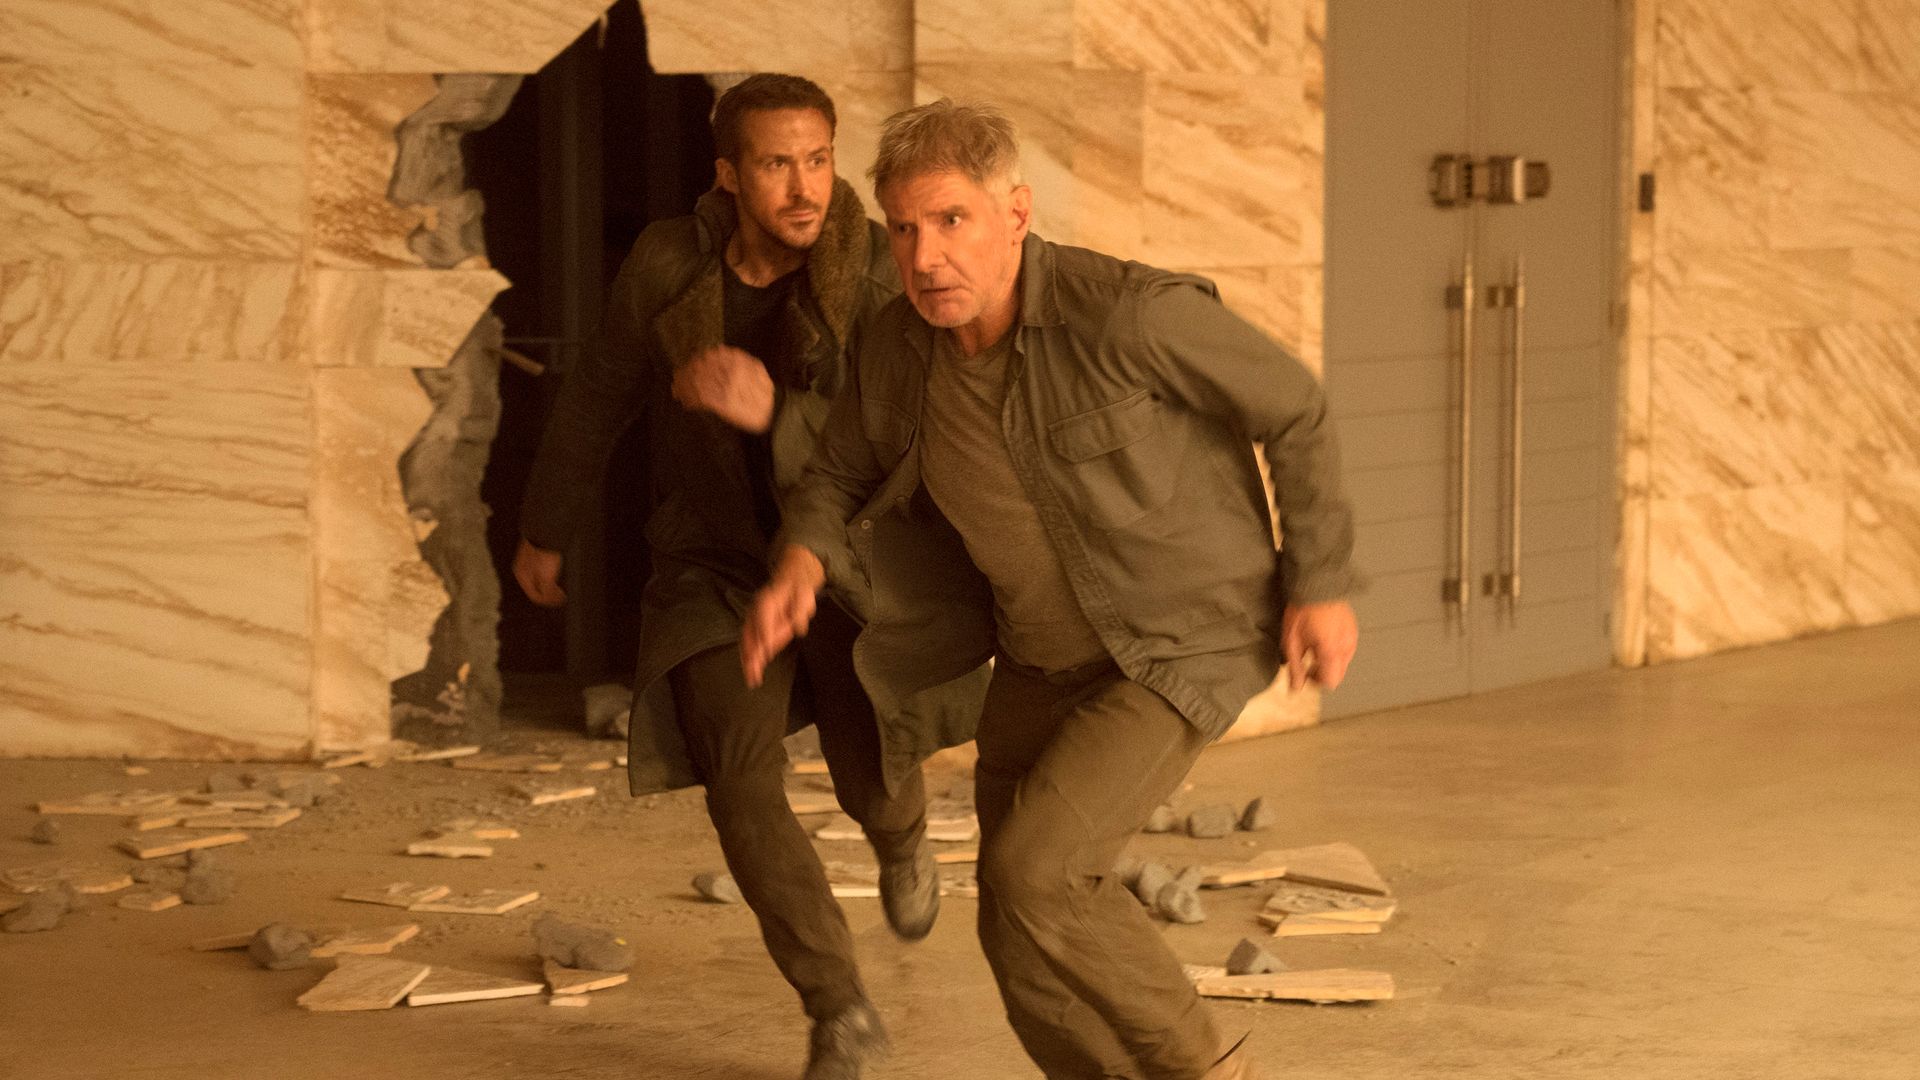 Ryan stars opposite Harrison Ford in Blade Runner 2049